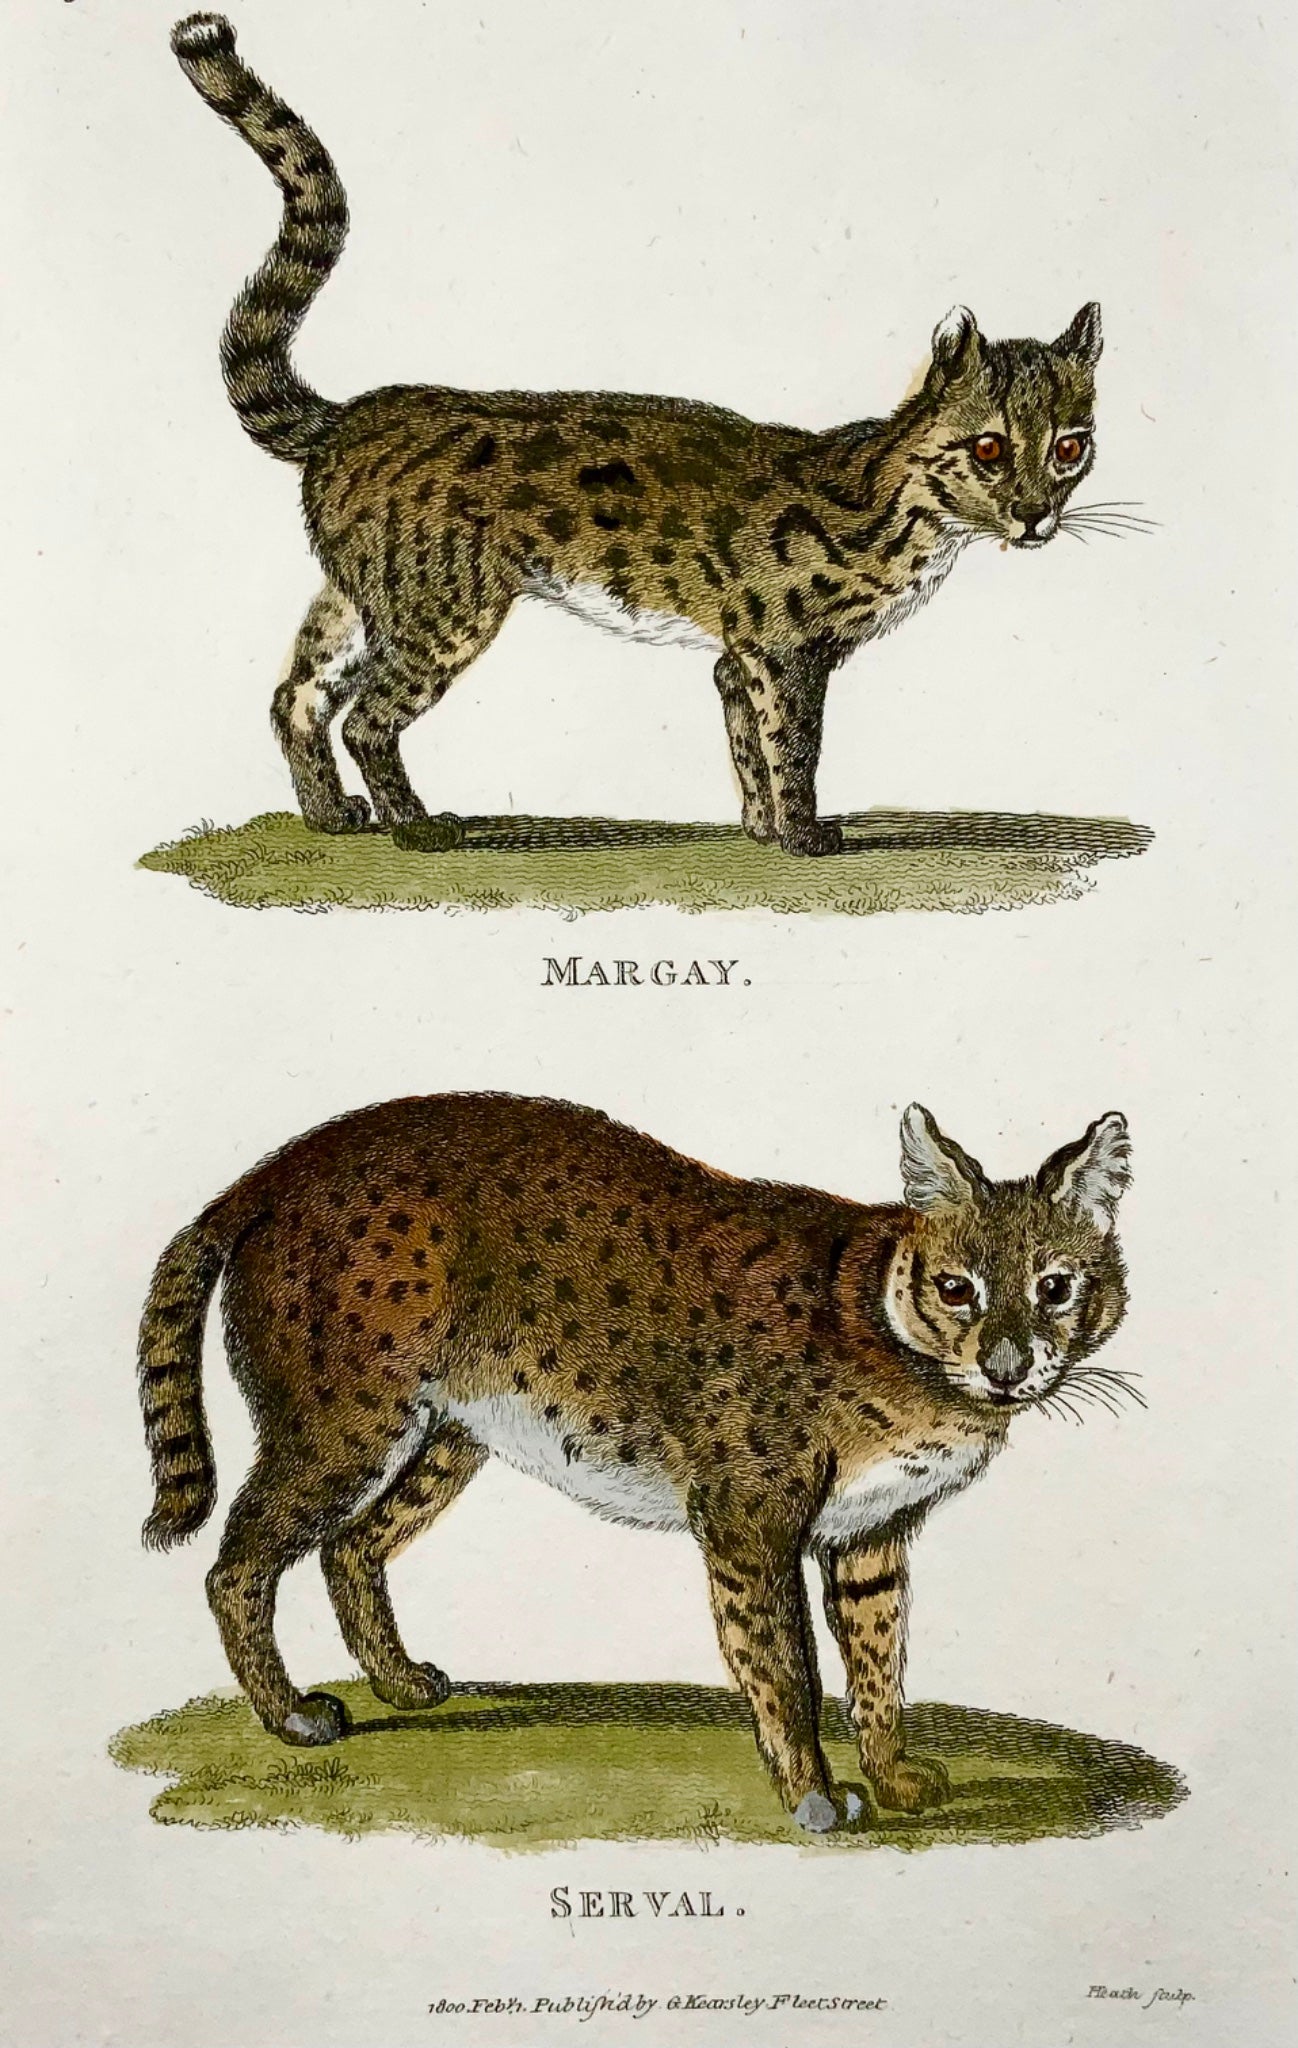 1800 Serval, Margay, mammifère, Heath sculp., bonne première impression, couleur de la main